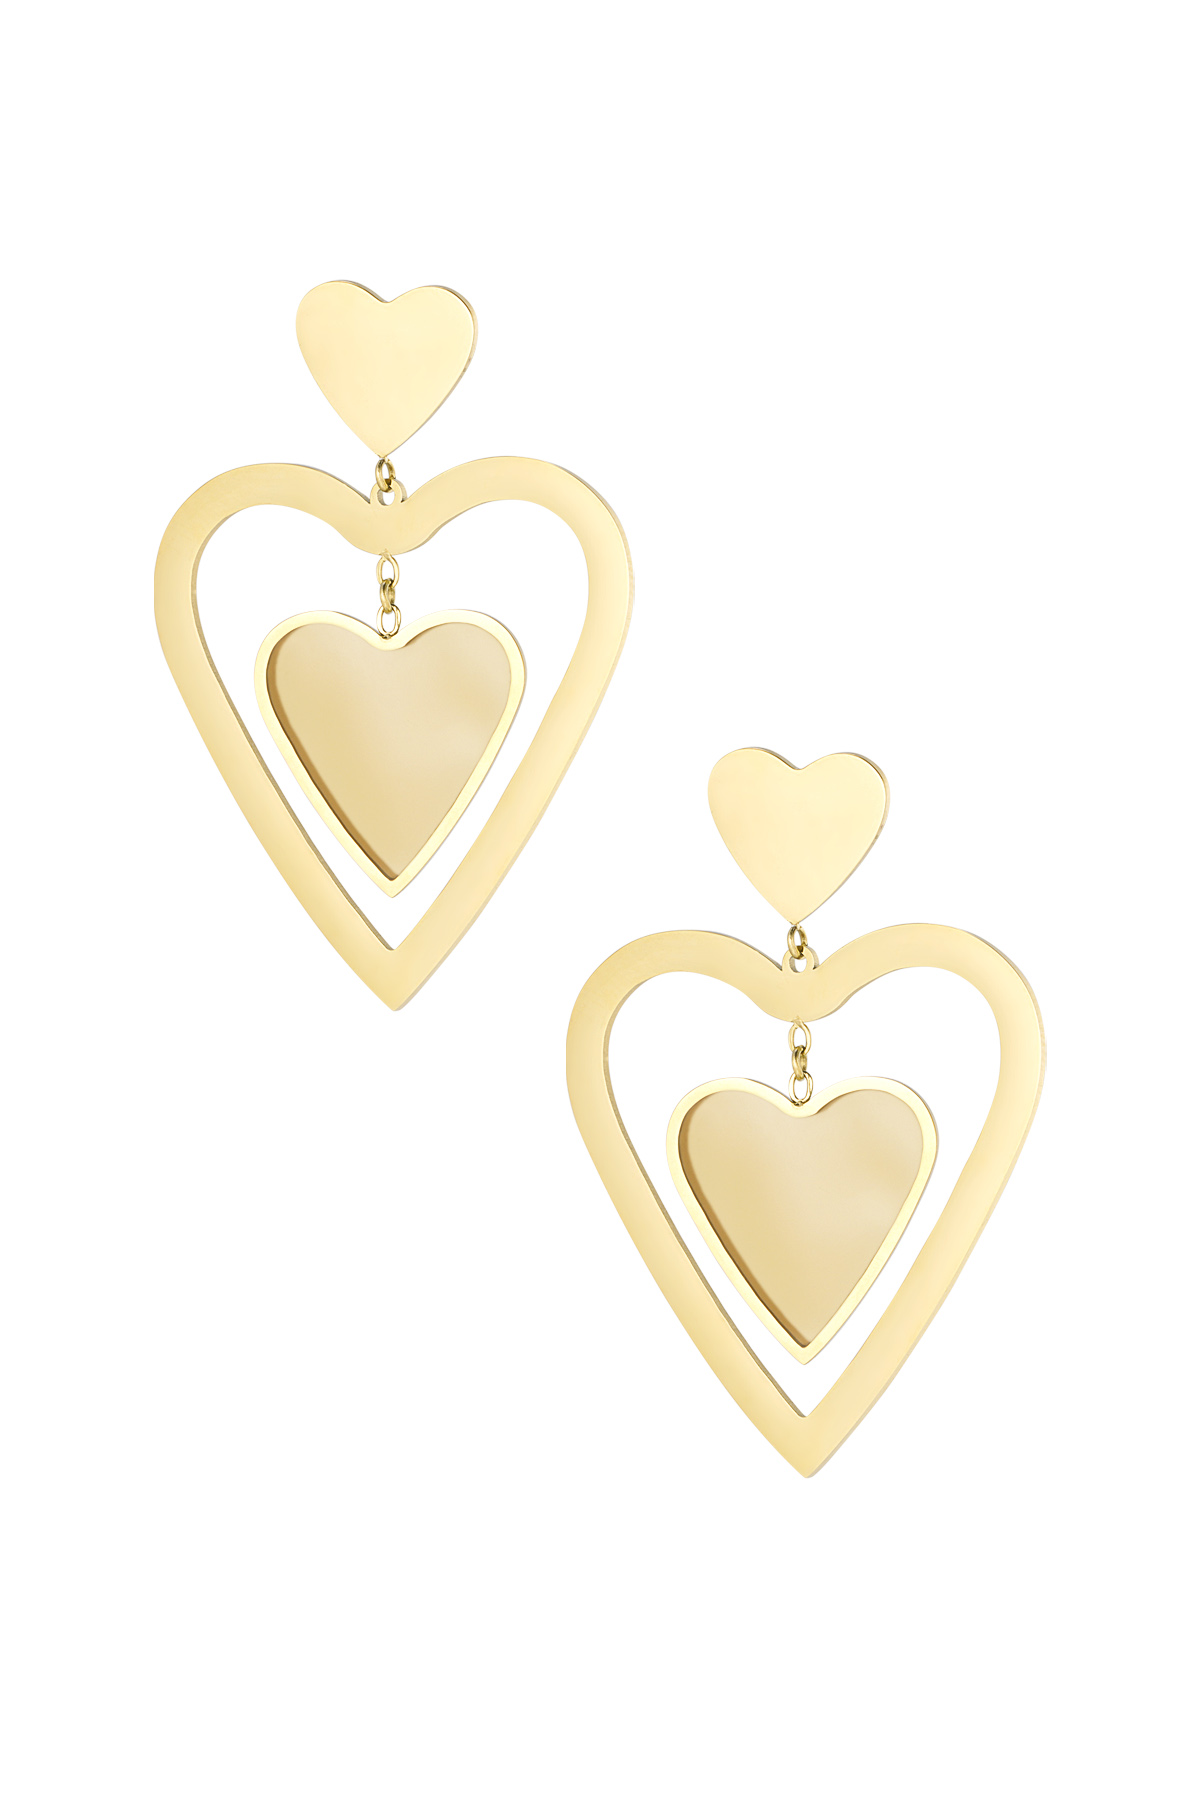 Orecchini doppio cuore - oro/beige h5 